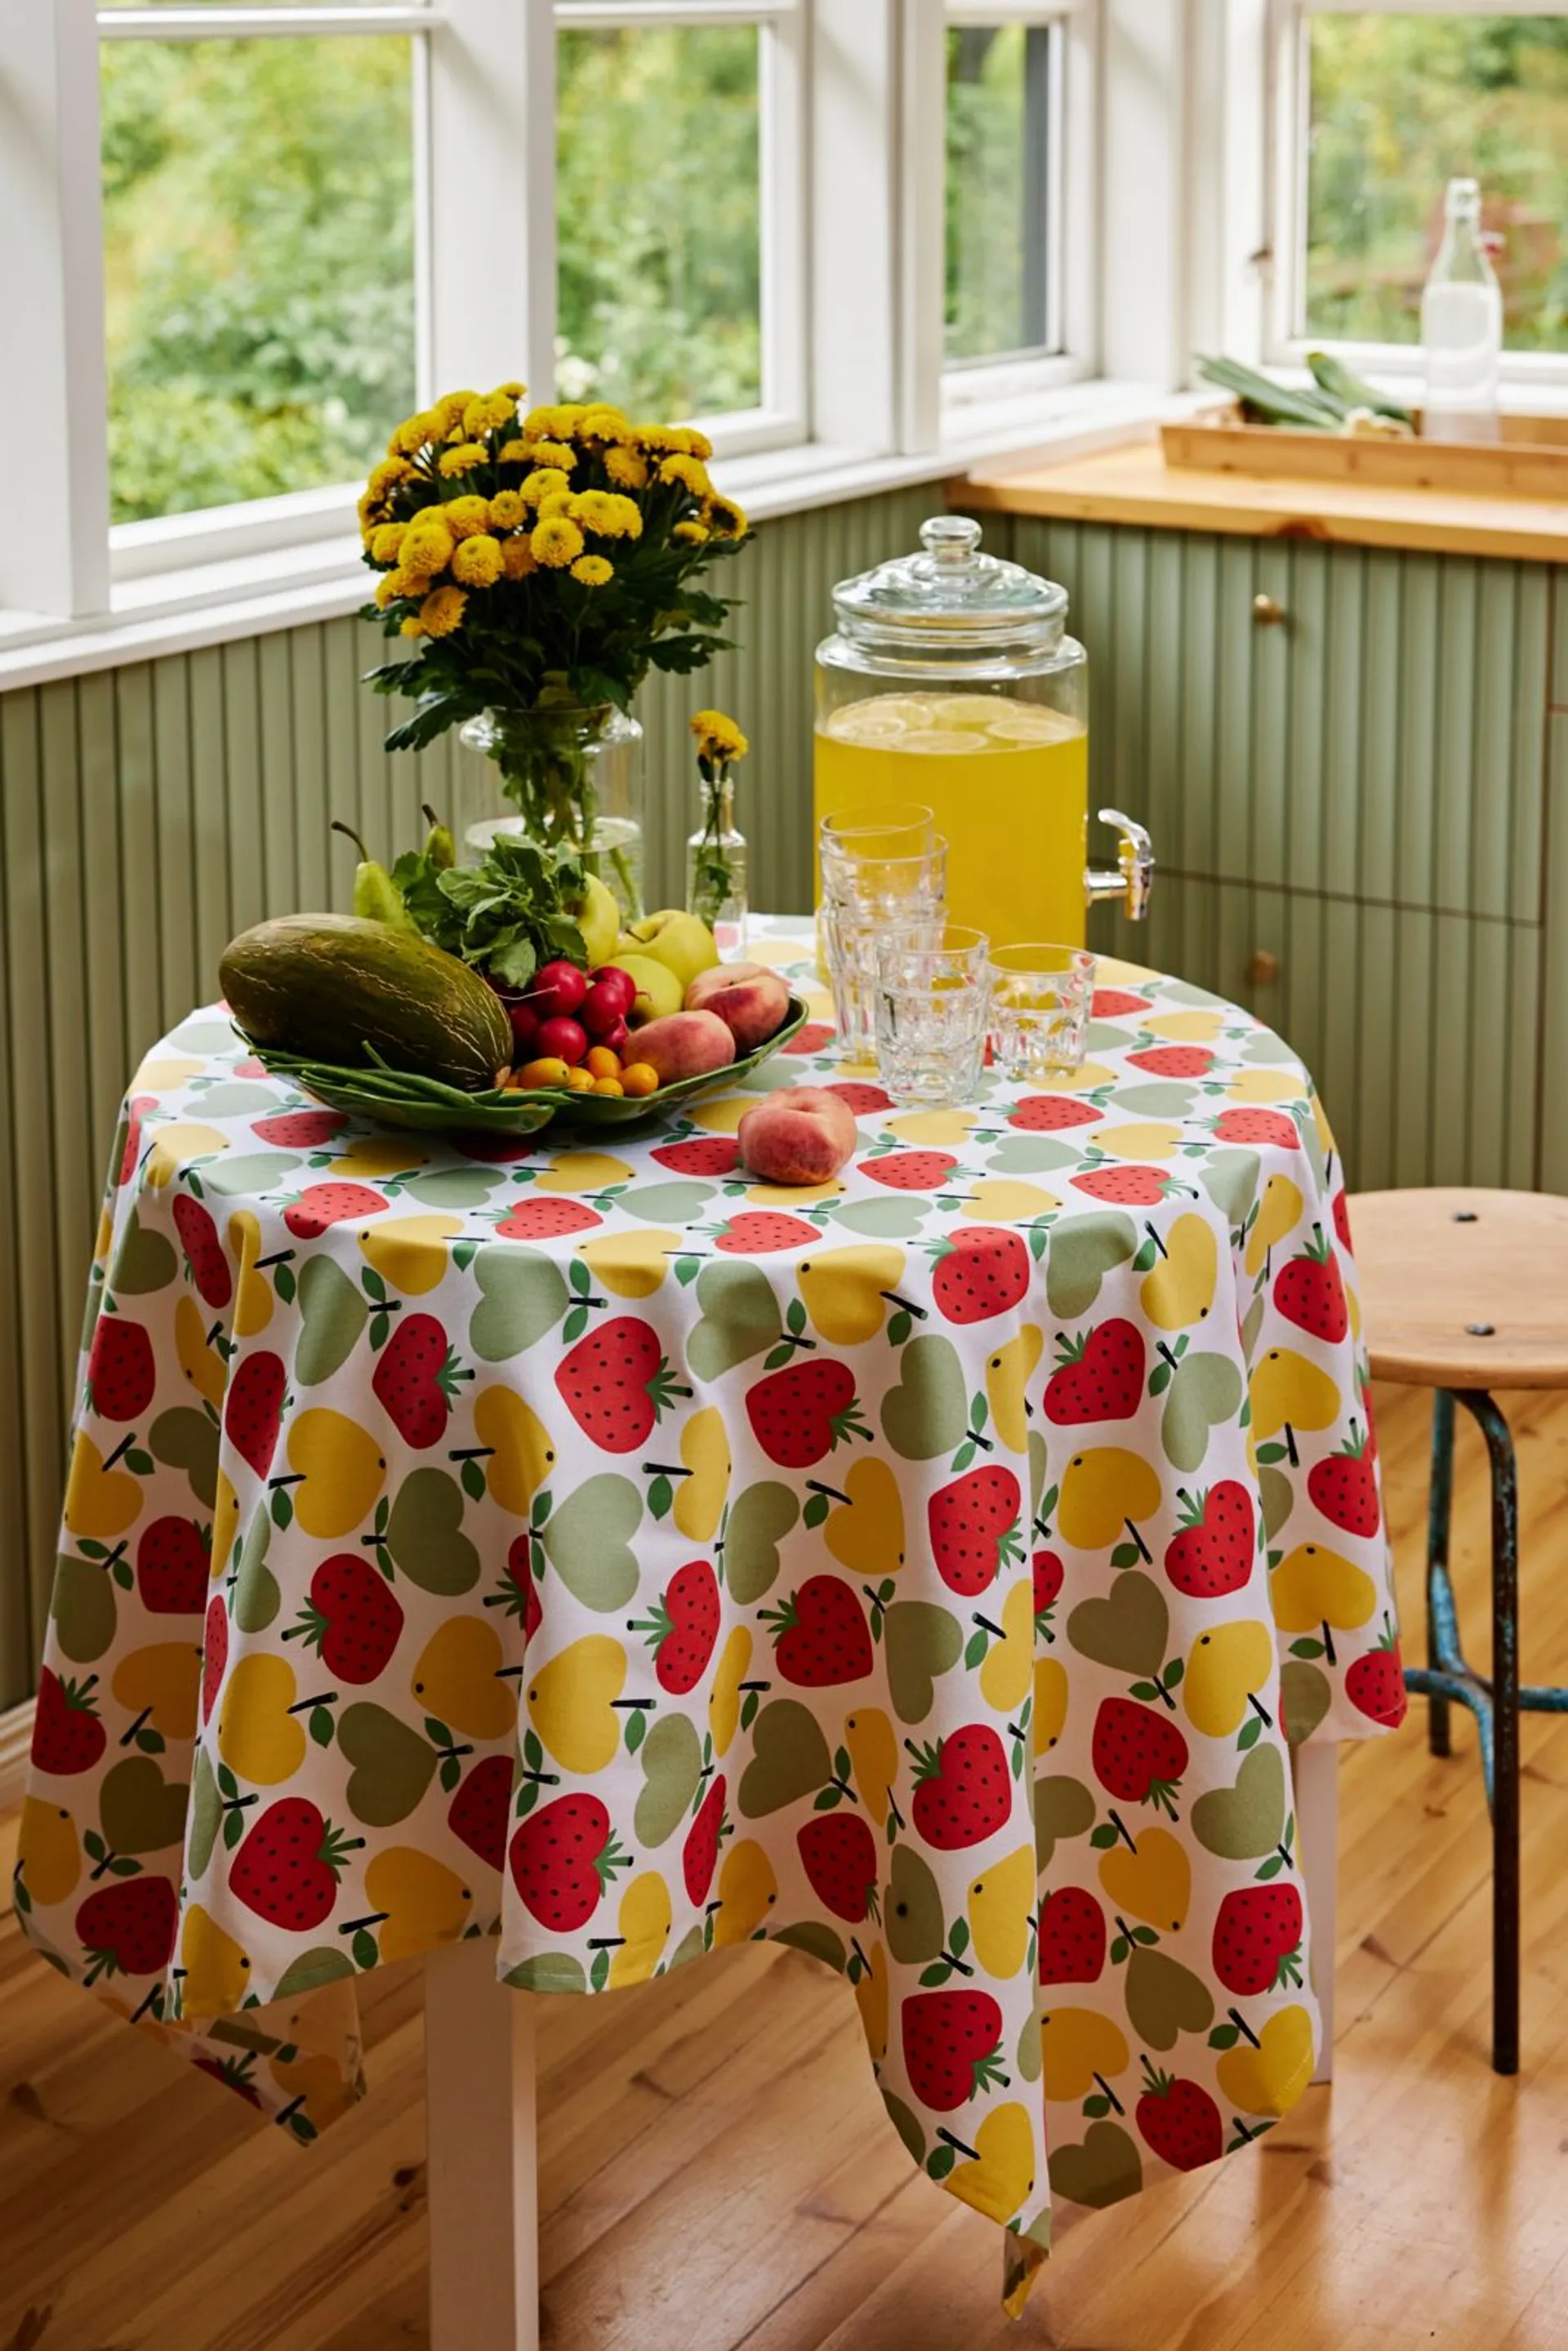 Finlayson pöytäliina Sydänhedelmät 145x145 cm, valko-vihreä-keltainen - 2